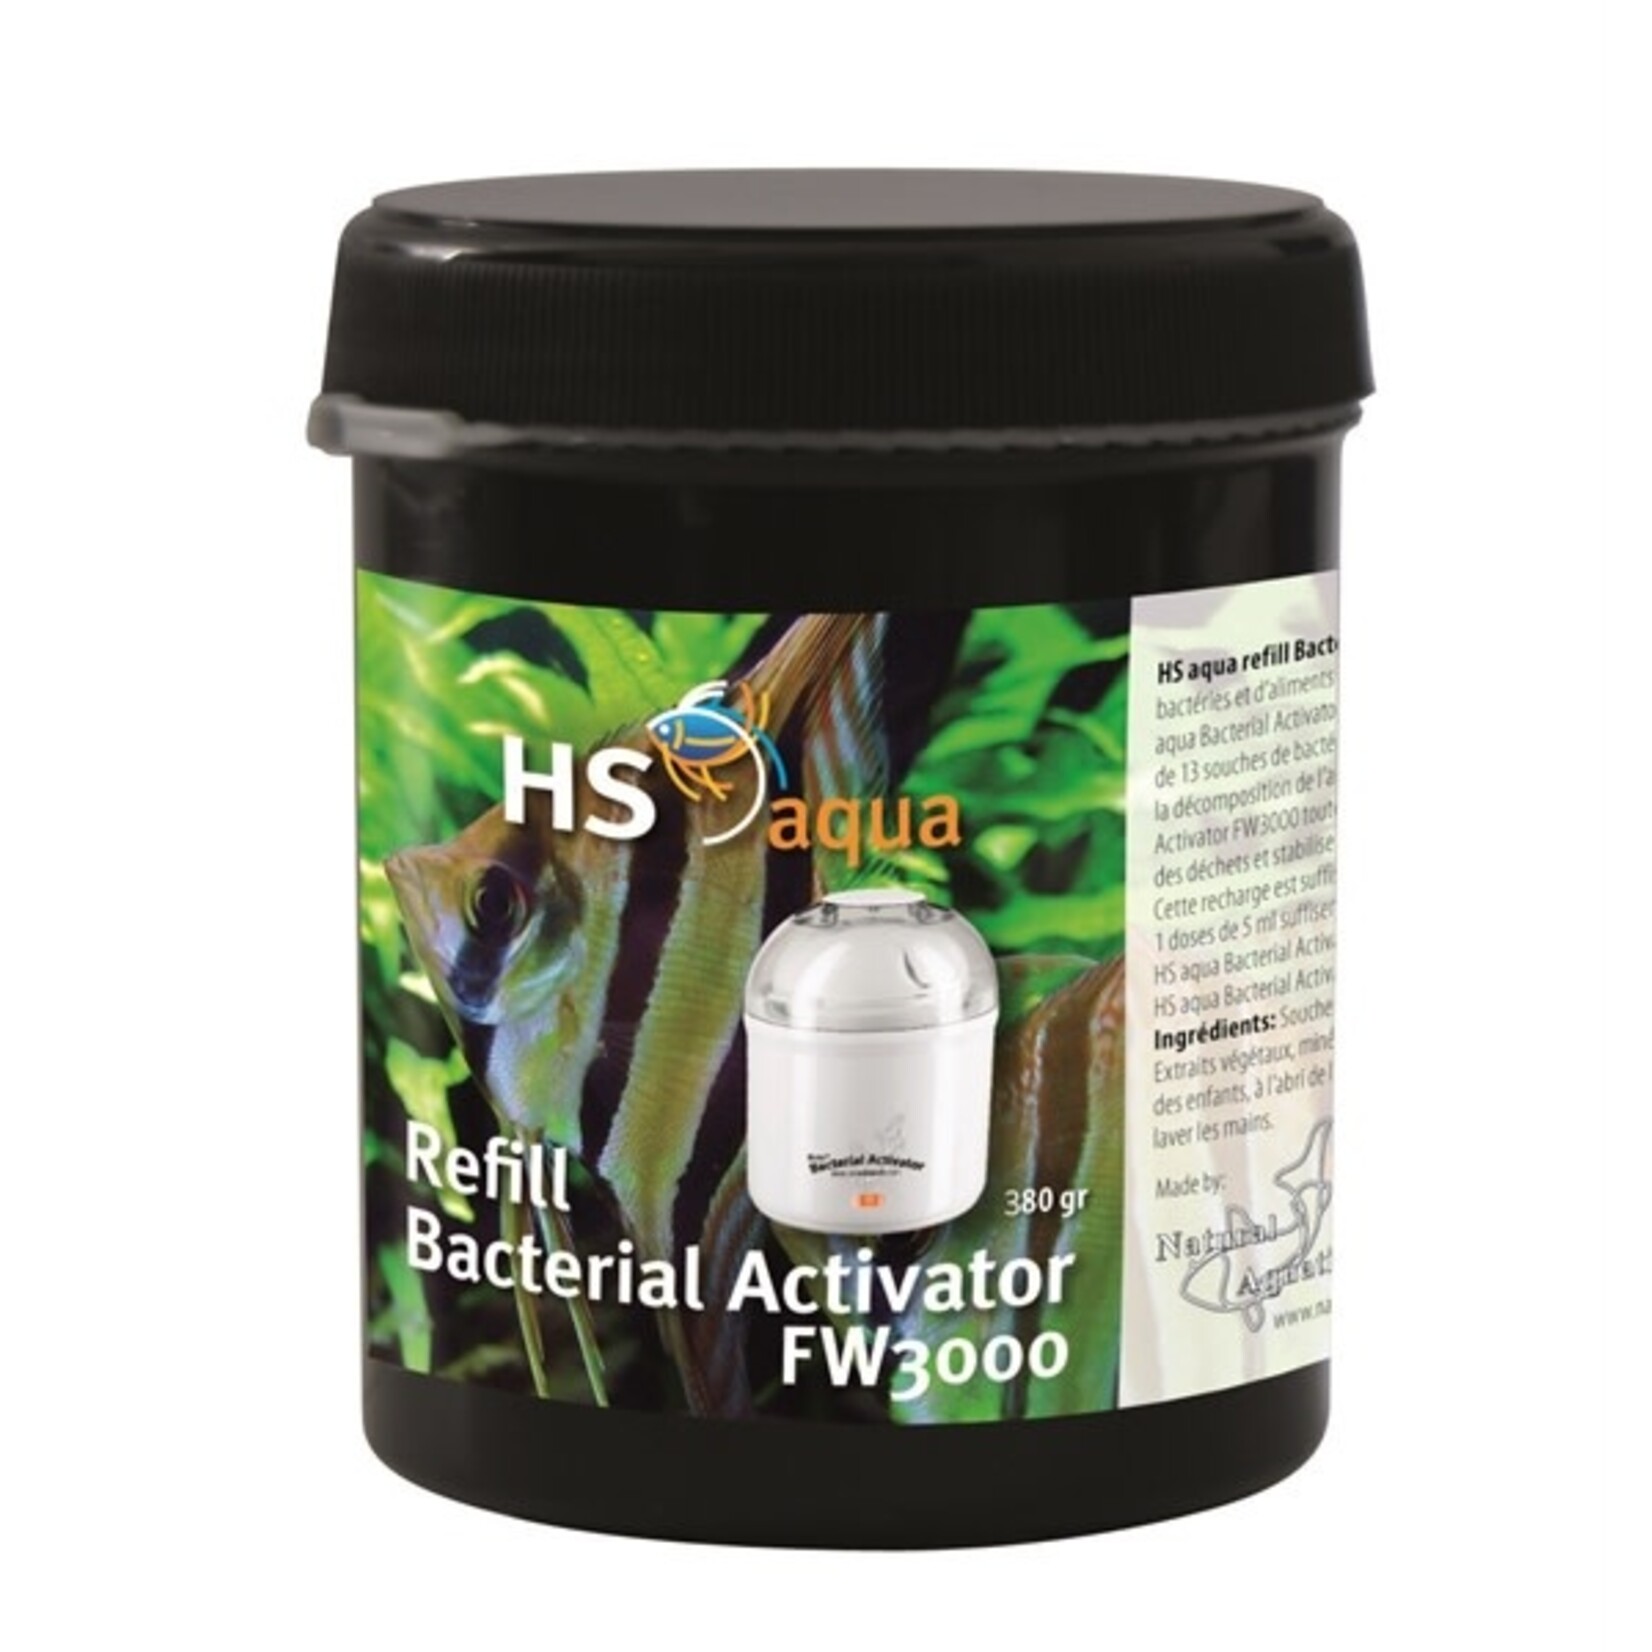 HS Aqua Refill bacterial activator fw 3000/380 gr